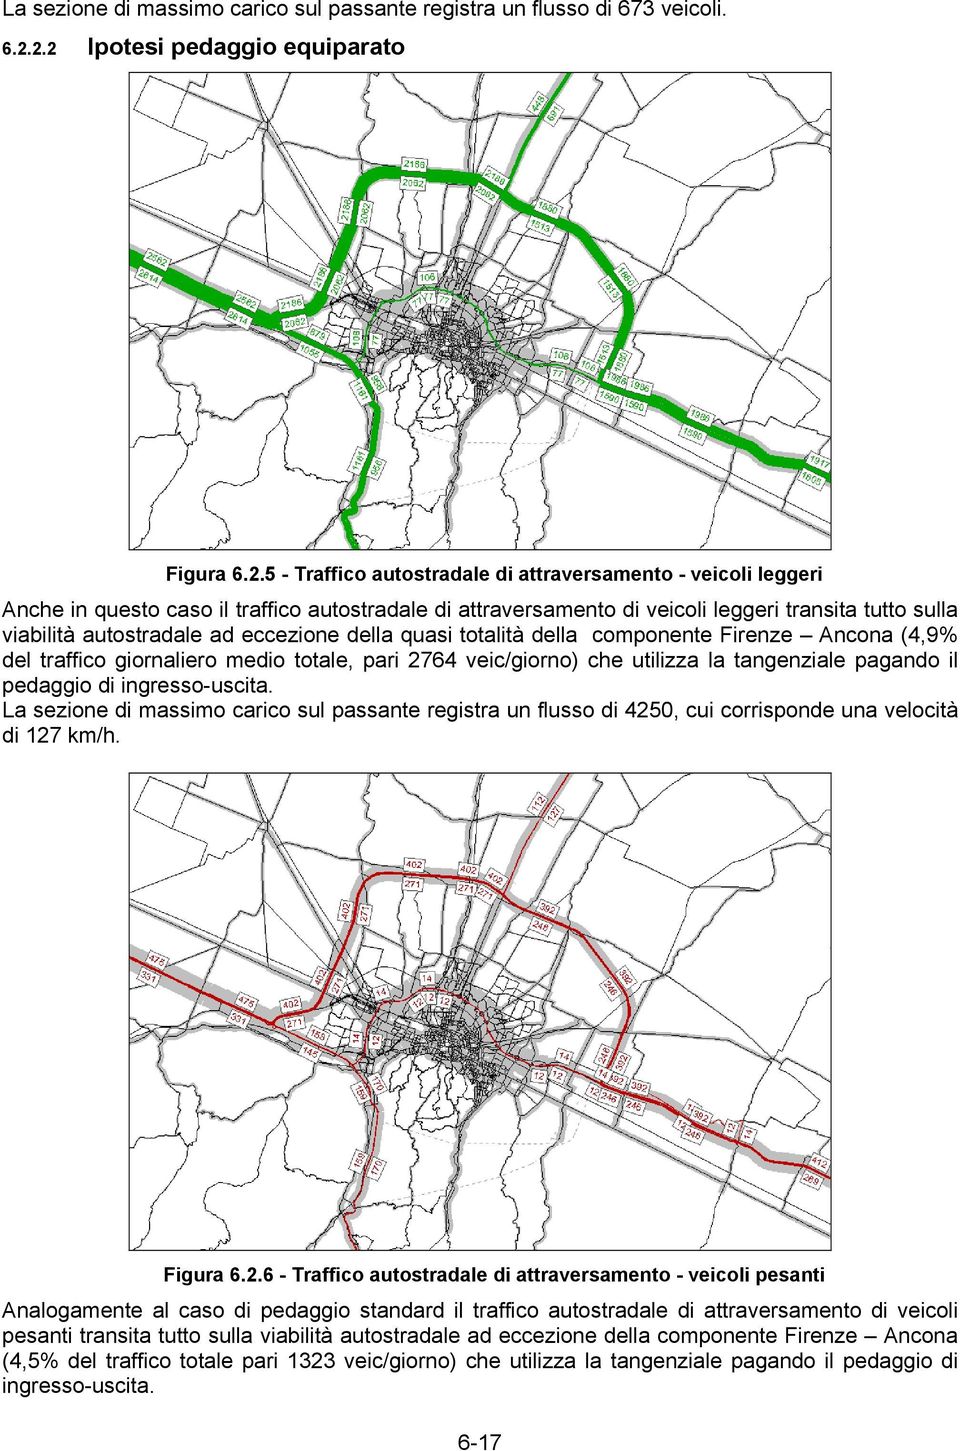 tutto sulla viabilità autostradale ad eccezione della quasi totalità della componente Firenze Ancona (4,9% del traffico giornaliero medio totale, pari 2764 veic/giorno) che utilizza la tangenziale